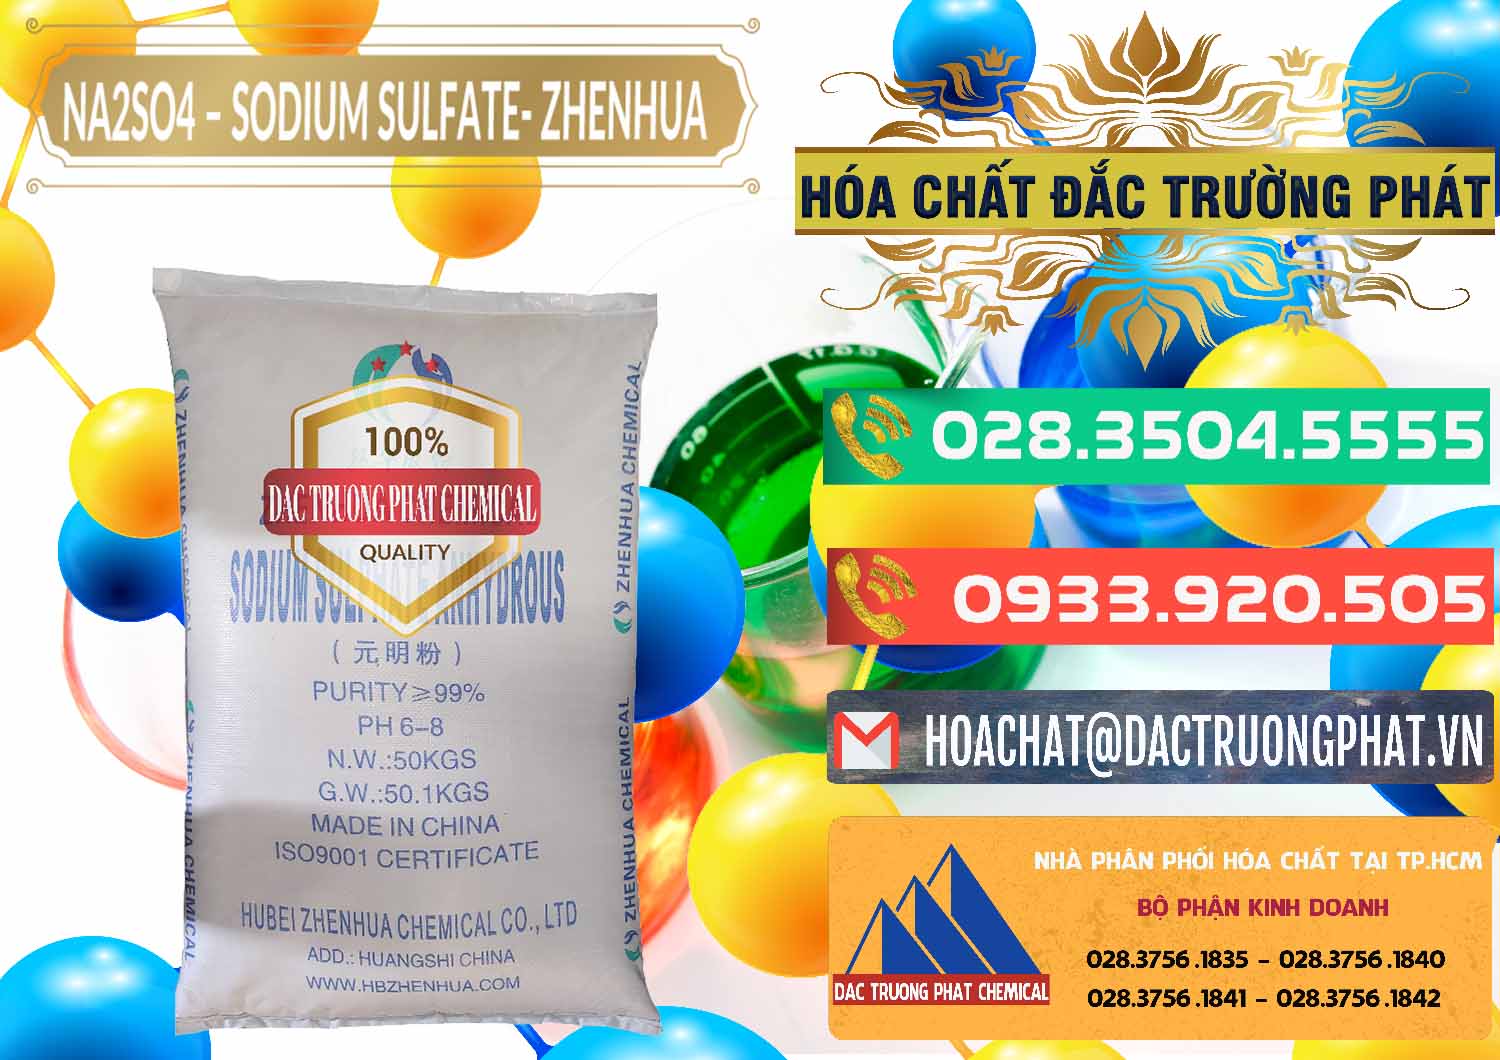 Nơi kinh doanh và bán Sodium Sulphate - Muối Sunfat Na2SO4 Zhenhua Trung Quốc China - 0101 - Cty kinh doanh ( phân phối ) hóa chất tại TP.HCM - congtyhoachat.com.vn